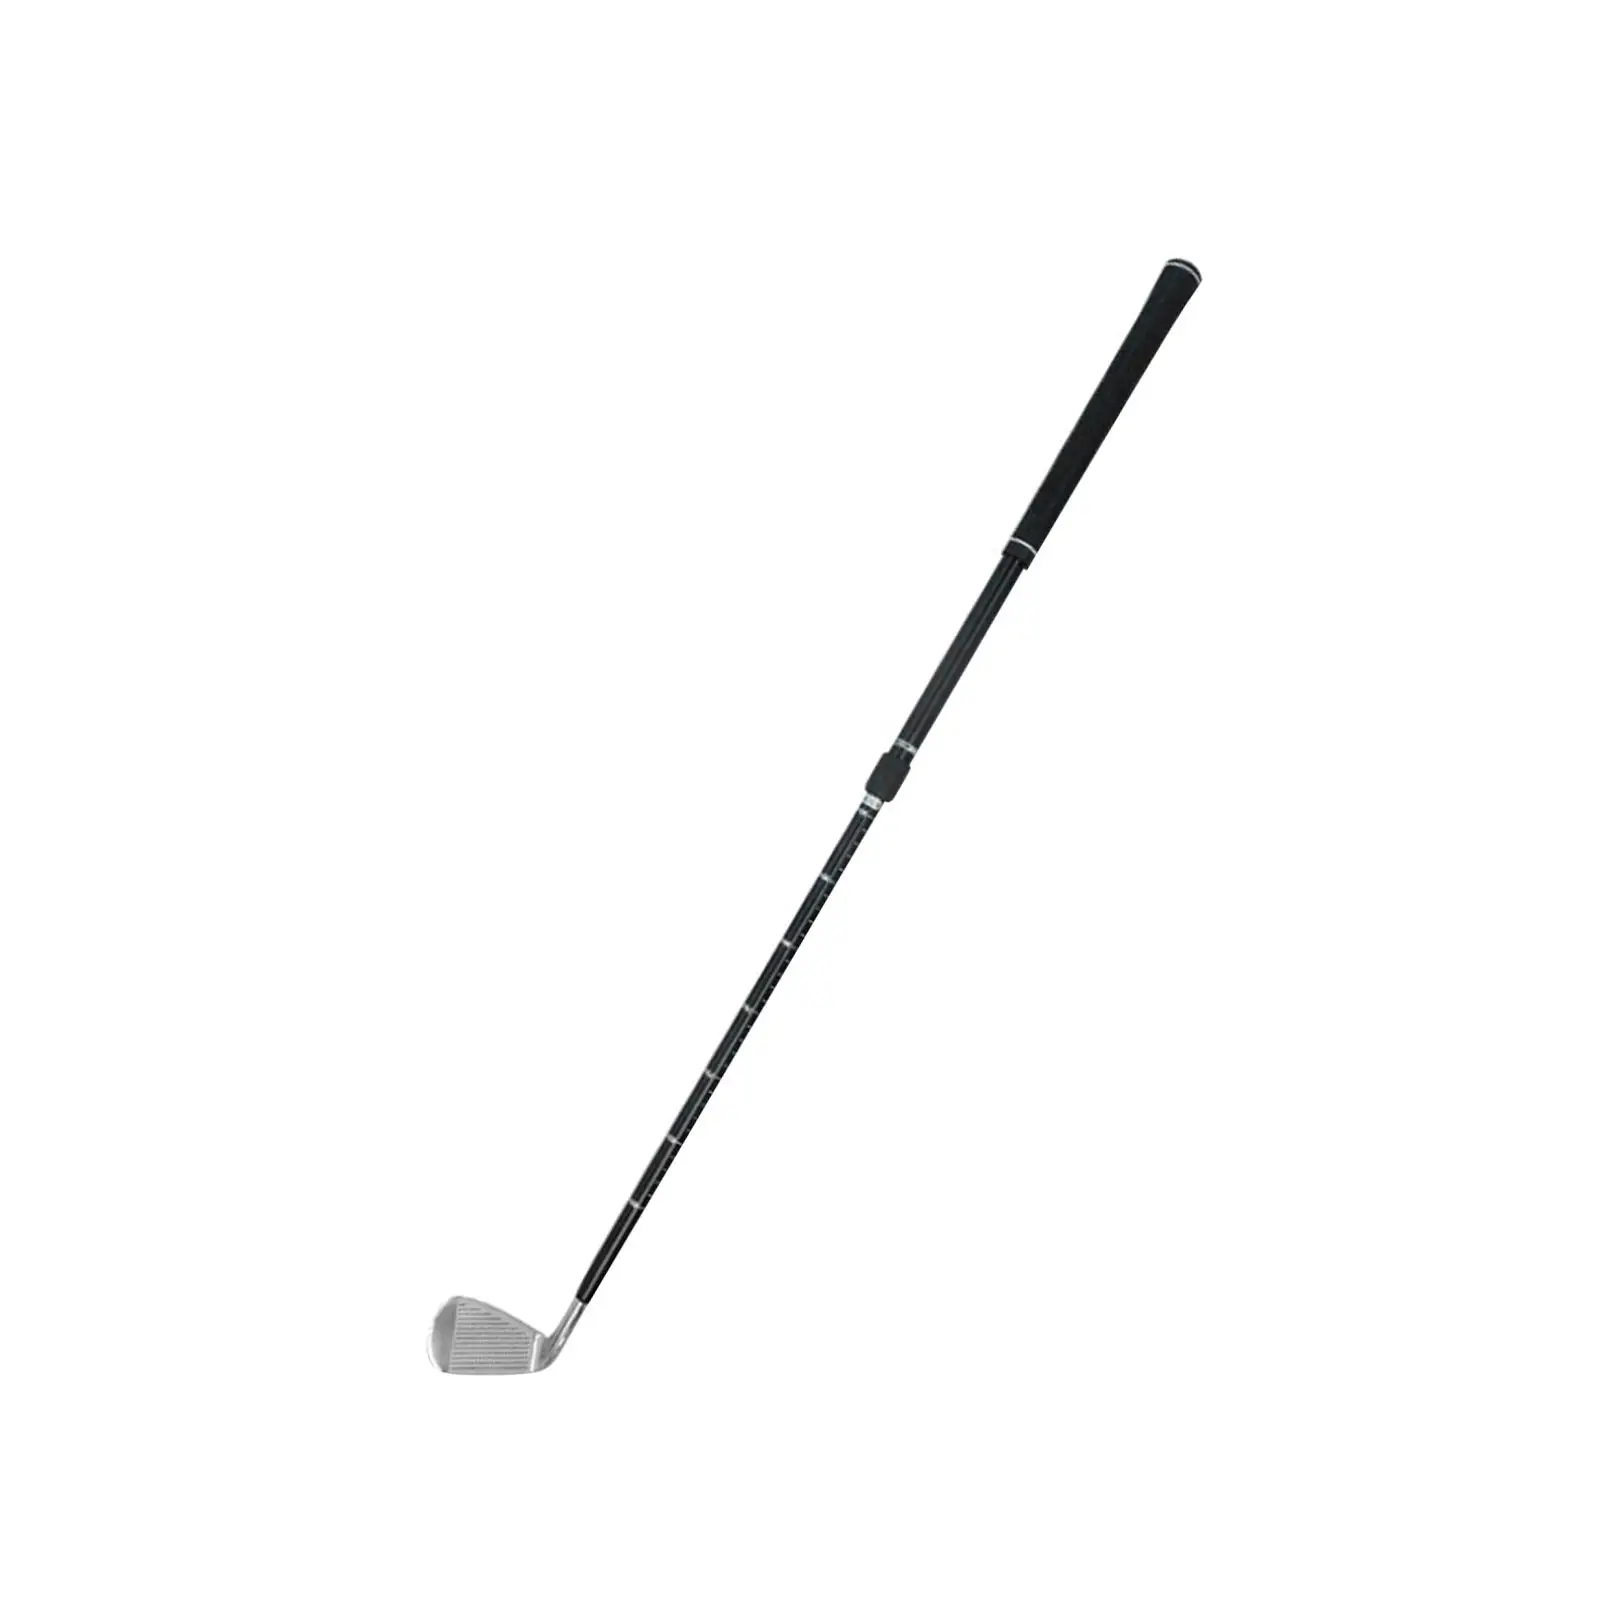  Клюшка для гольфа Golf Wedge Golf Practice Club Портативная регулируемая клюшка для чипов для гольфа с выдвижным валом